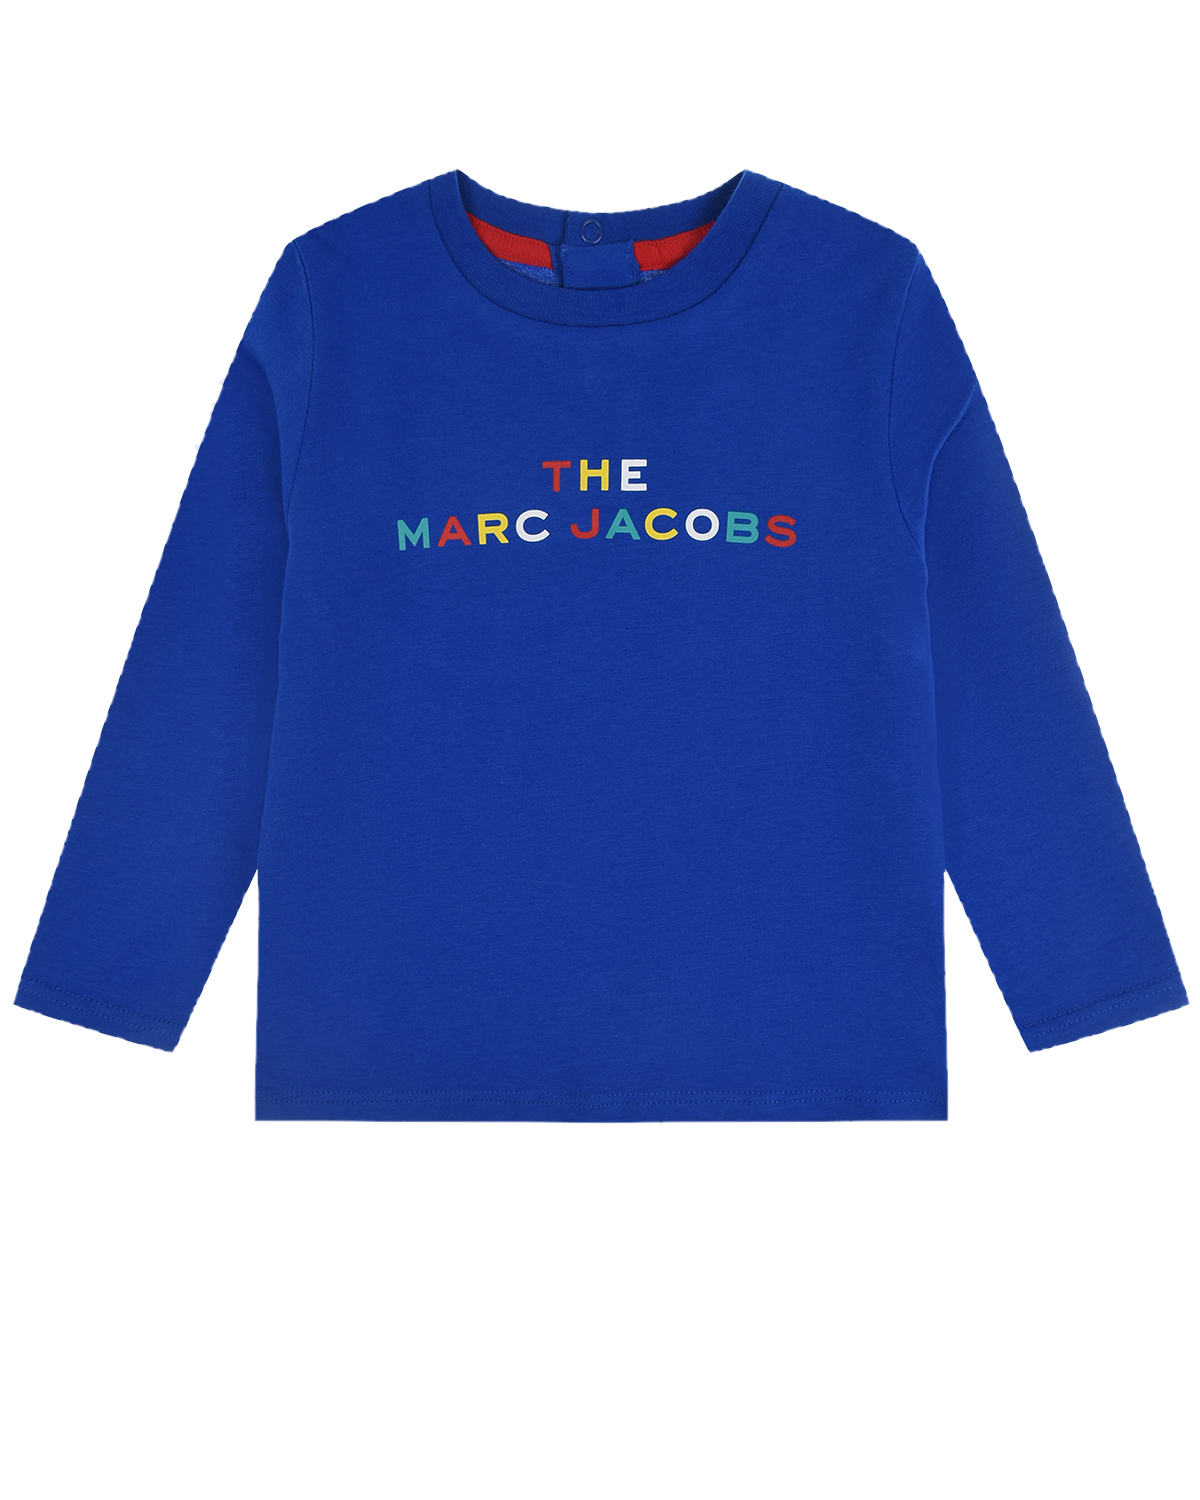 

Синяя толстовка с разноцветным логотипом Little Marc Jacobs детская, Синий, Синяя толстовка с разноцветным логотипом Little Marc Jacobs детская